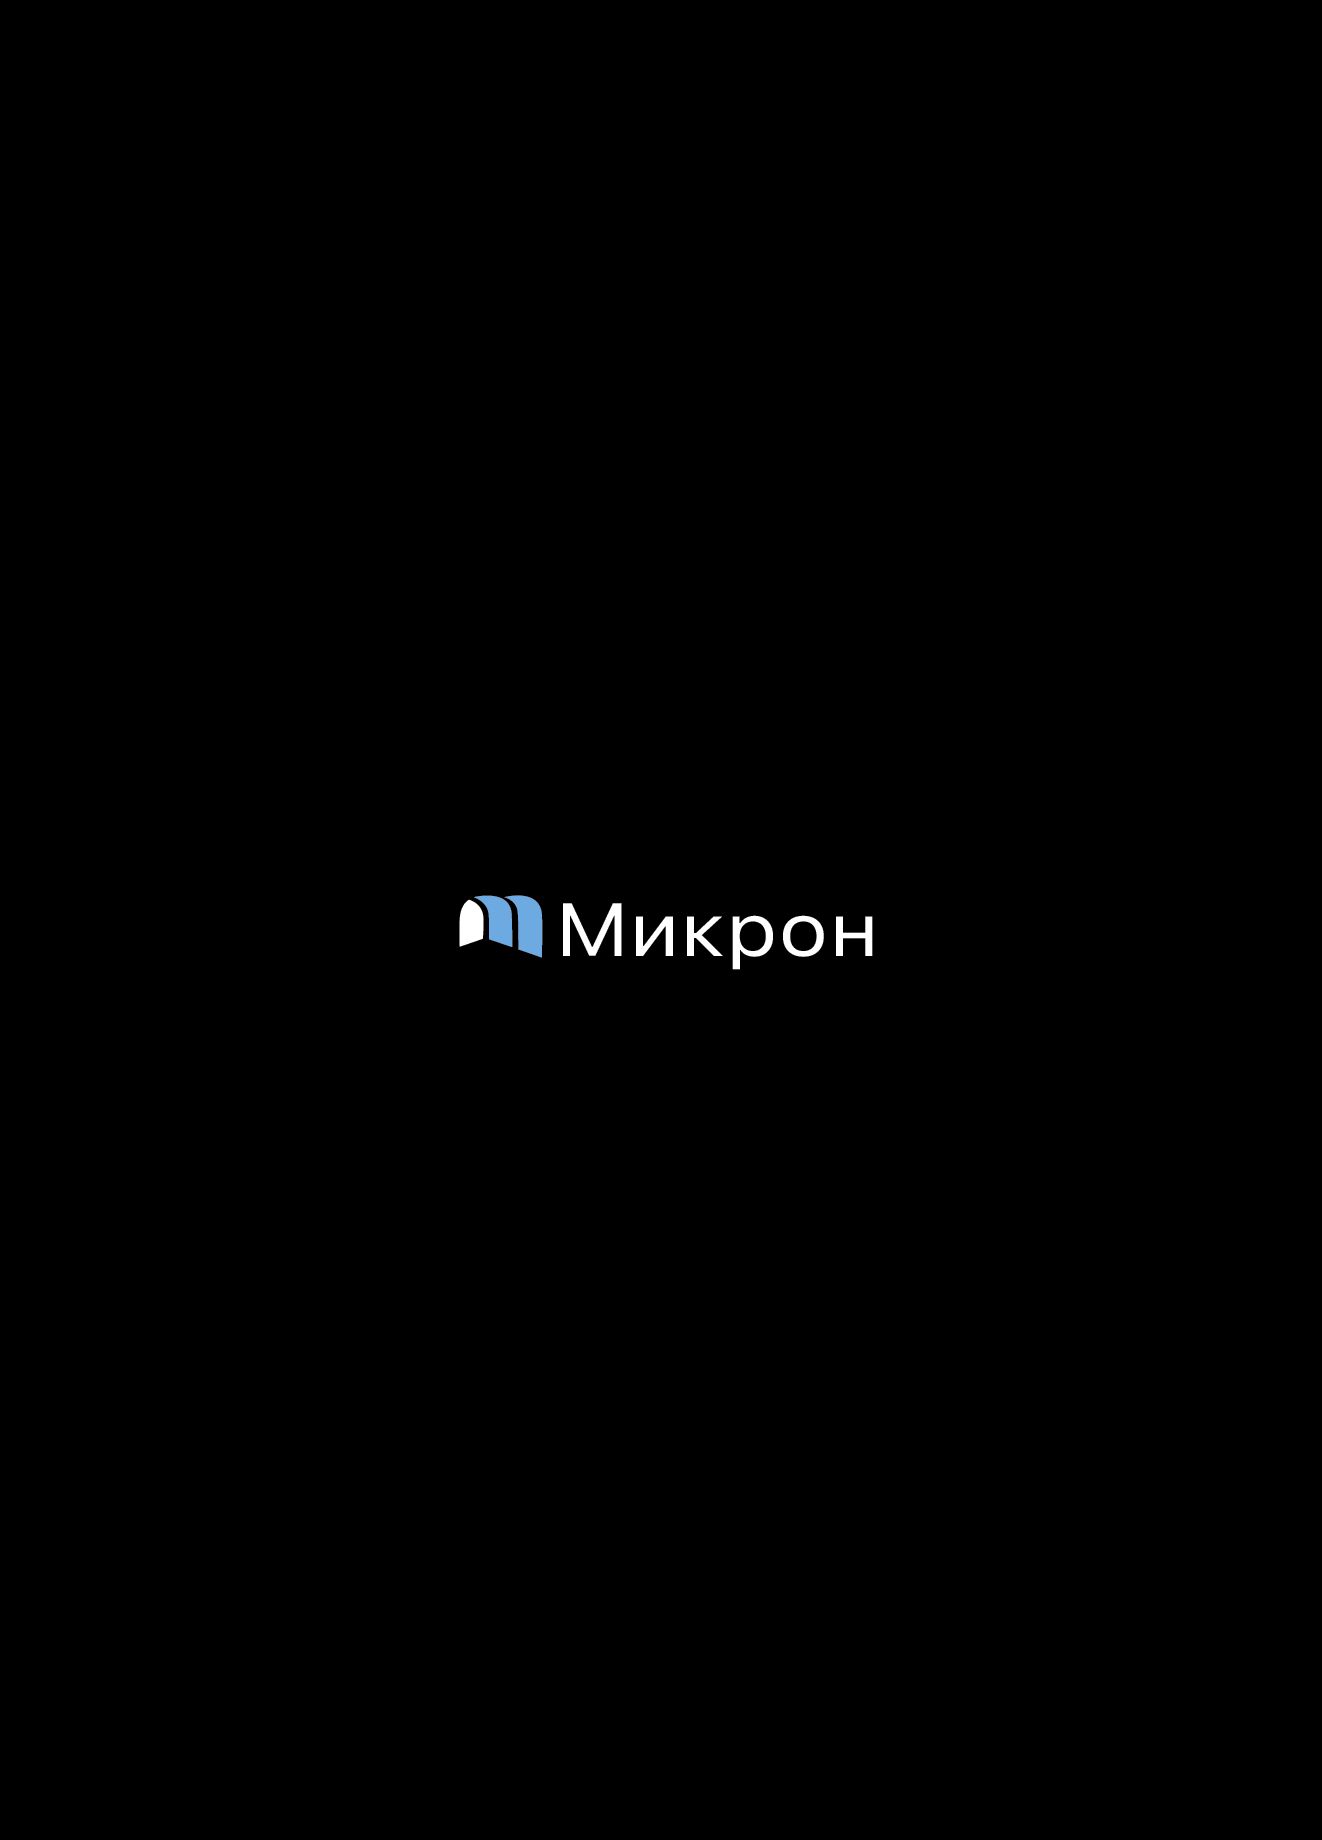 Логотип для сервисного центря по ремонту техники - Микрон - дизайнер dkolokolnikov